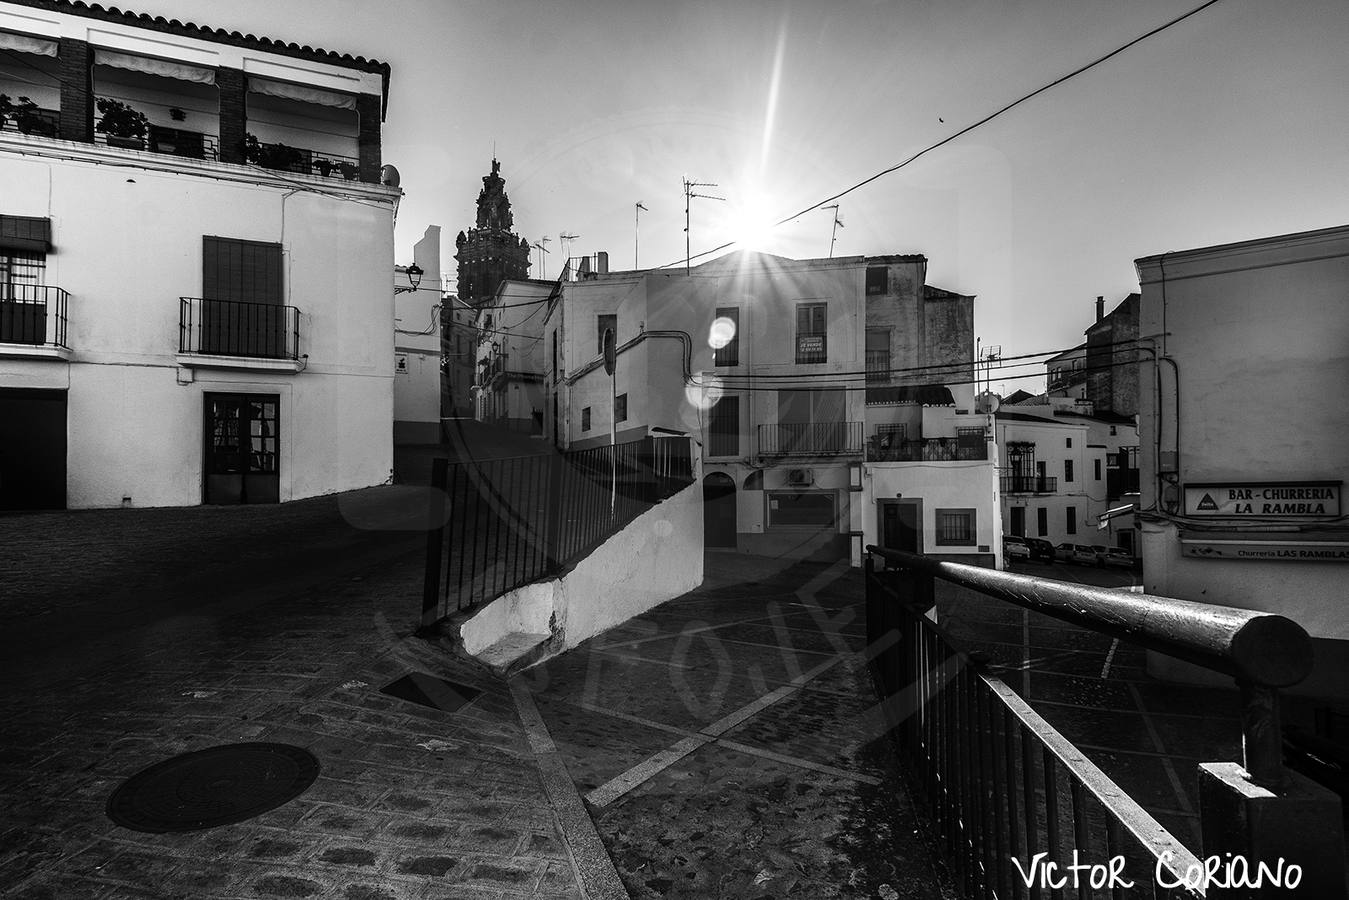 Fotos: Otra mirada, original y atractiva, de Jerez de los Caballeros y su entorno